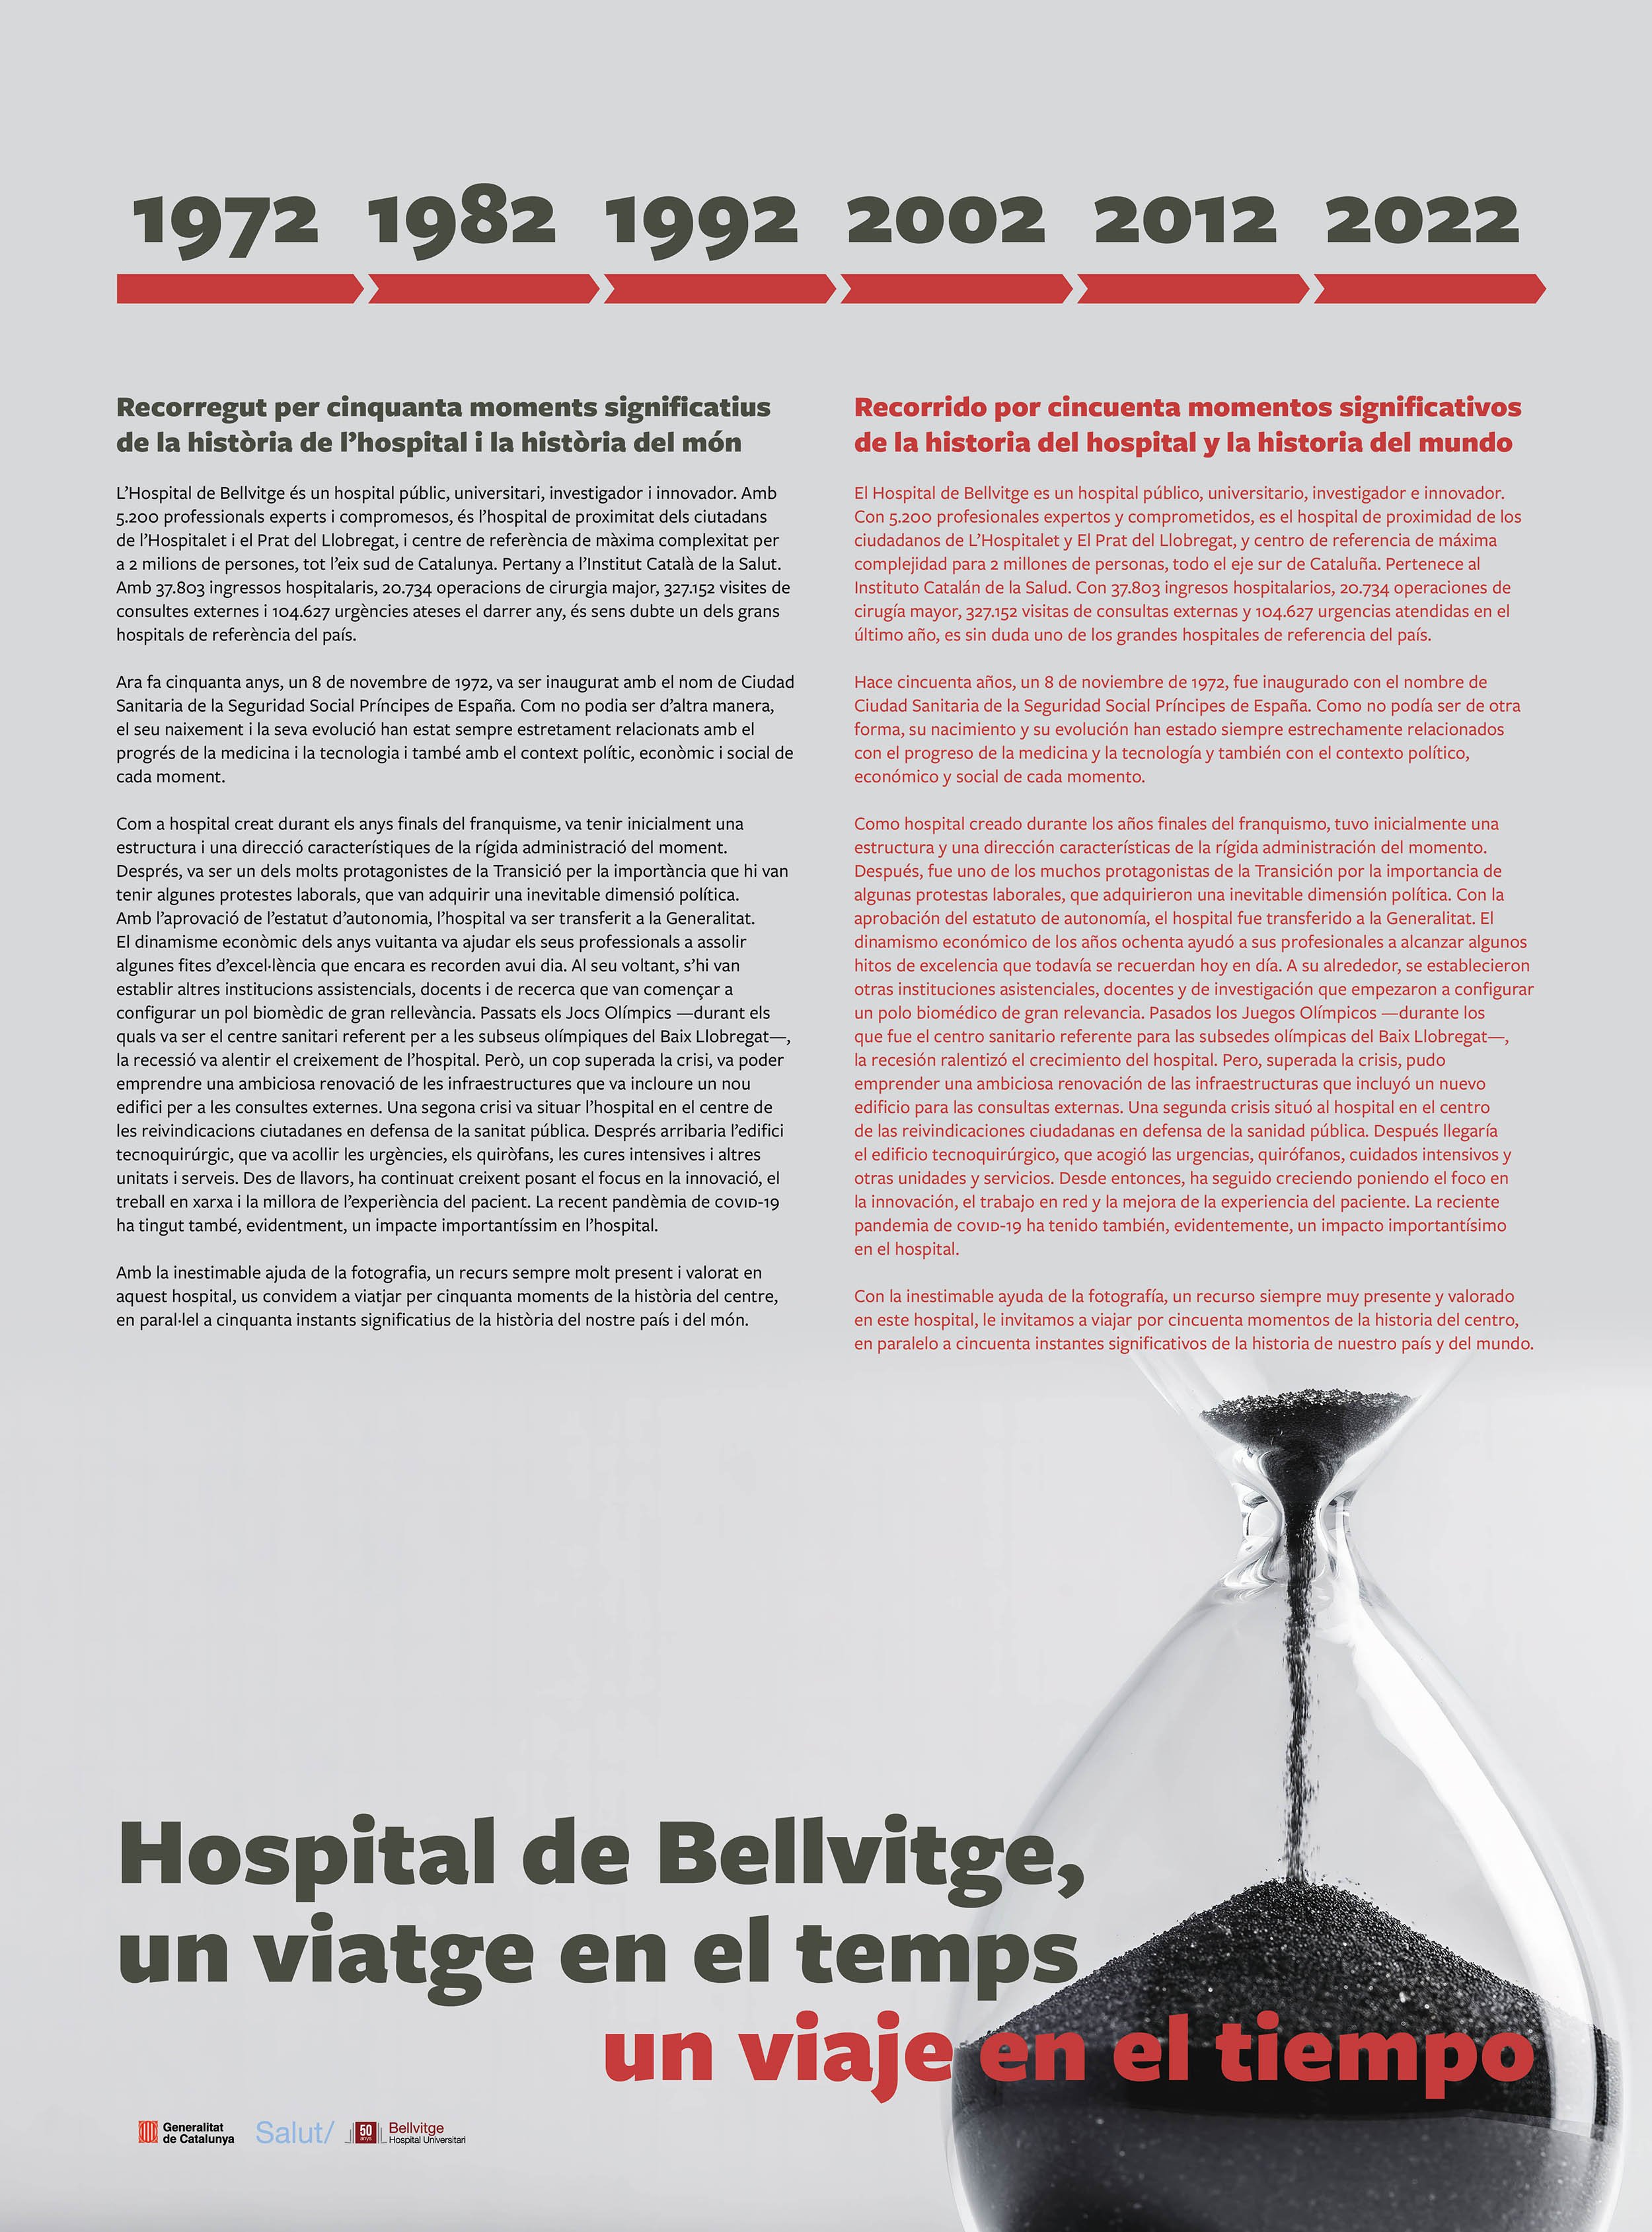 Hospital Belvitge Plafons Expo viatge en el temps 50 aniversari07.jpg